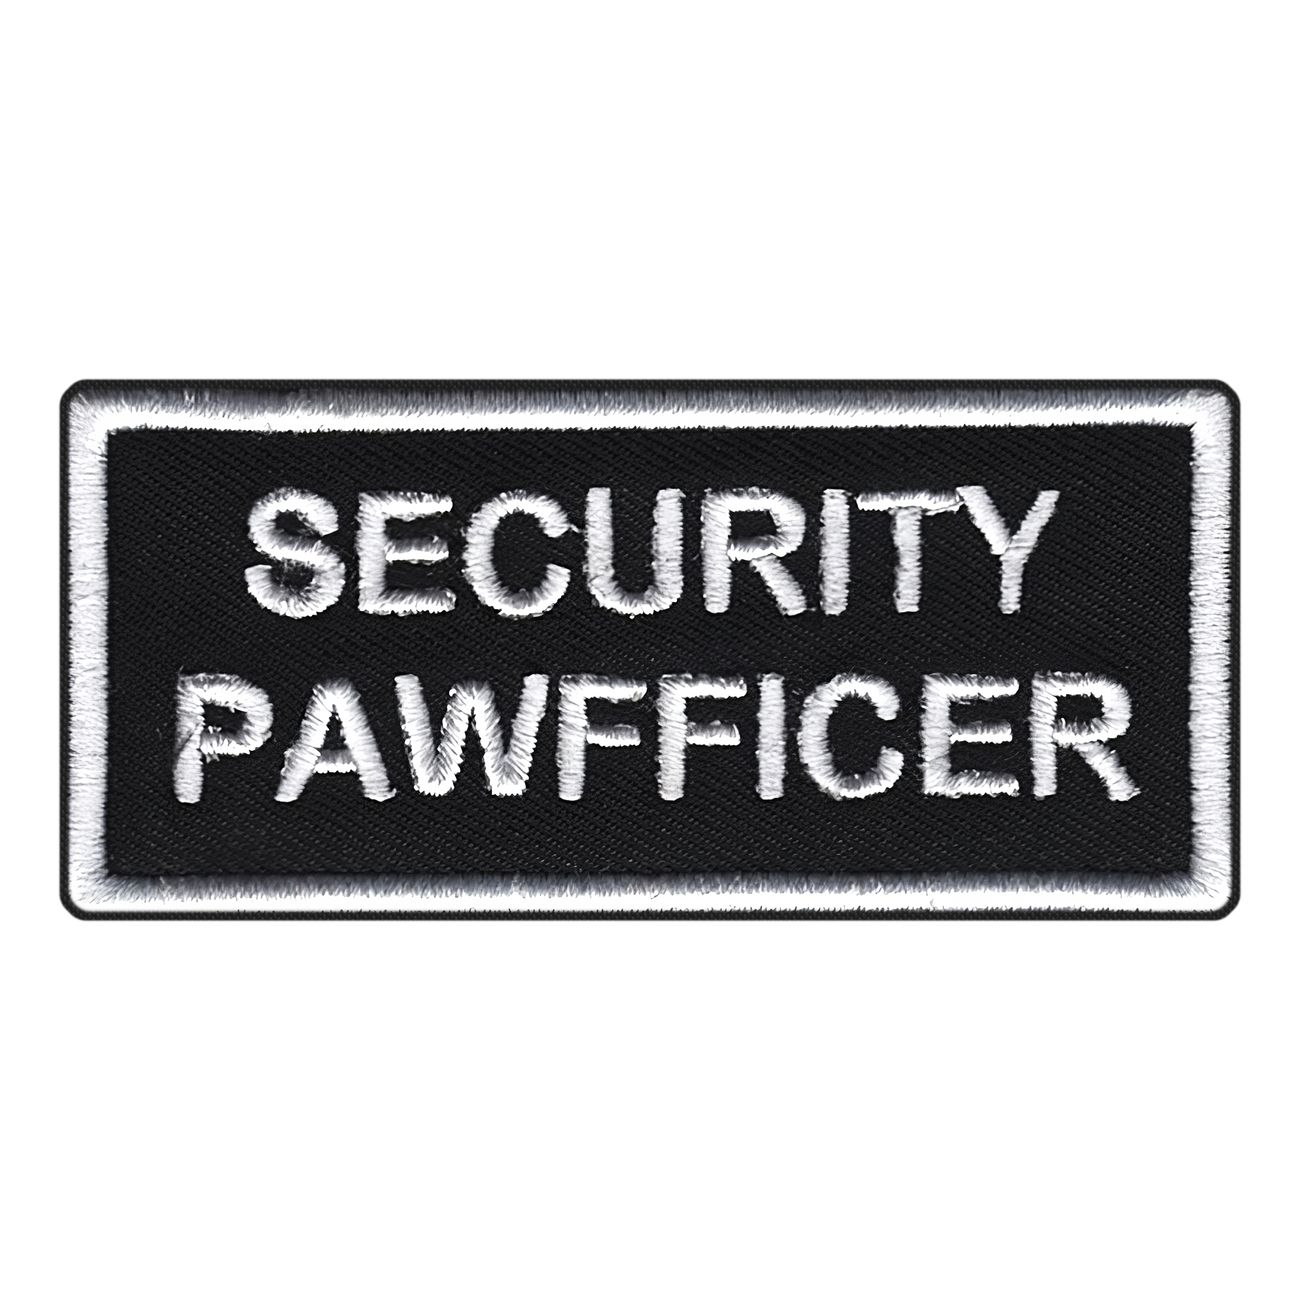 tygmarke-security-pawfficer-97763-1